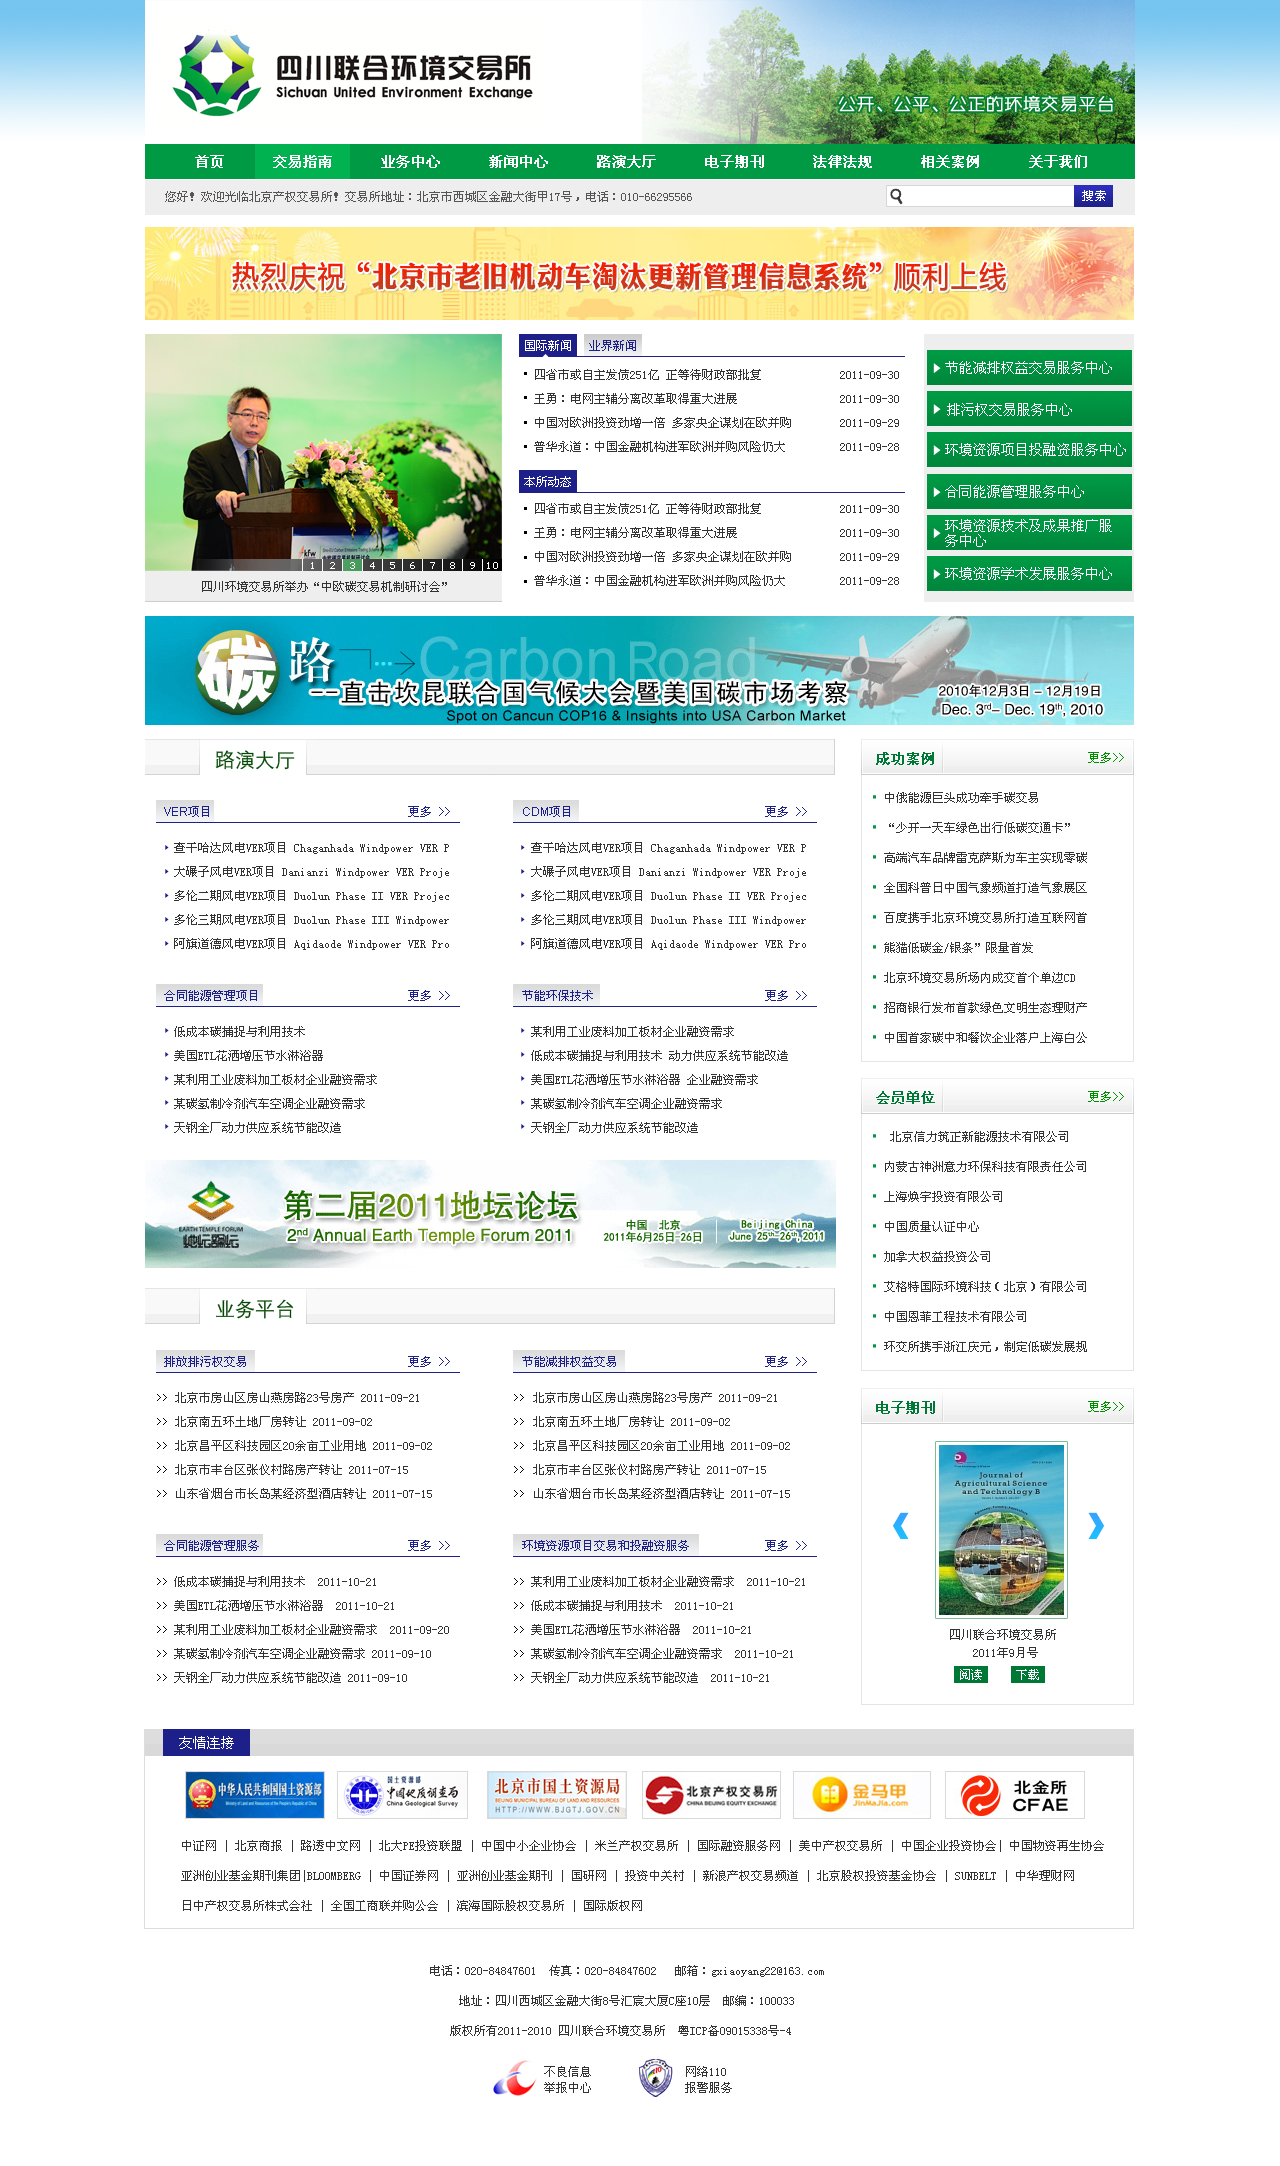 四川联合环境交易所网站设计由威客kktensun提交的方案 -